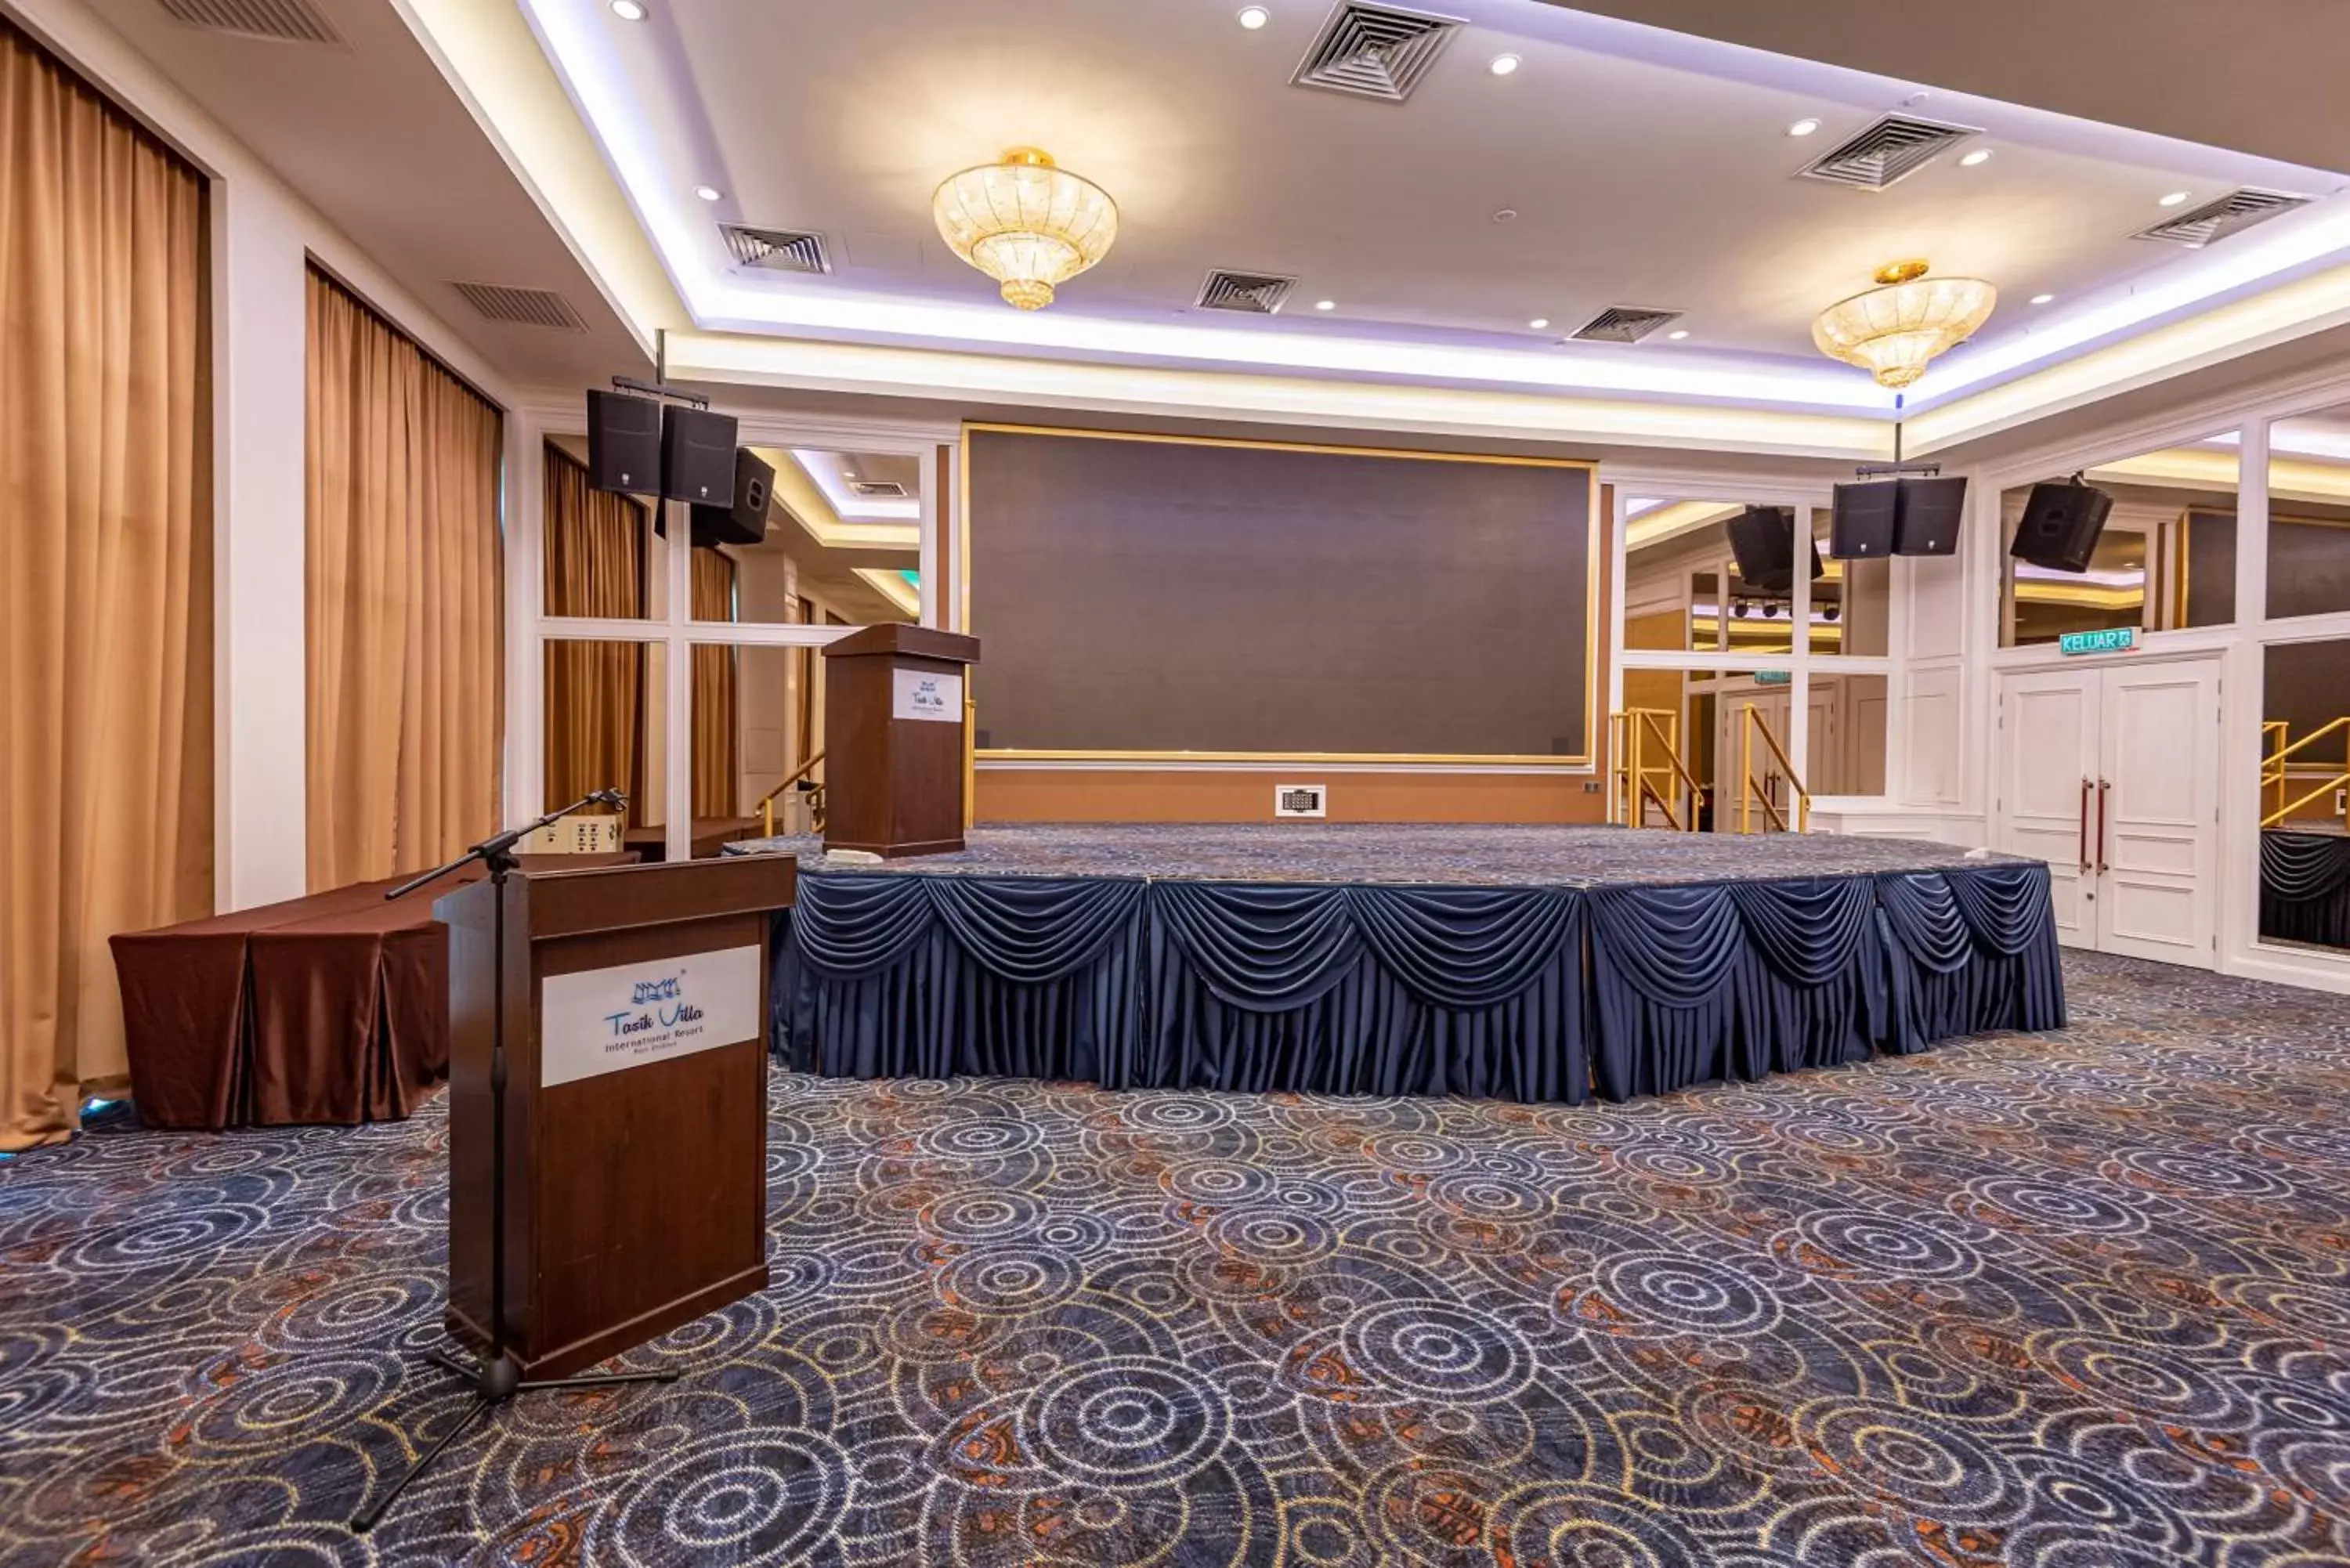 Banquet/Function facilities, Lobby/Reception in Tasik Villa International Resort